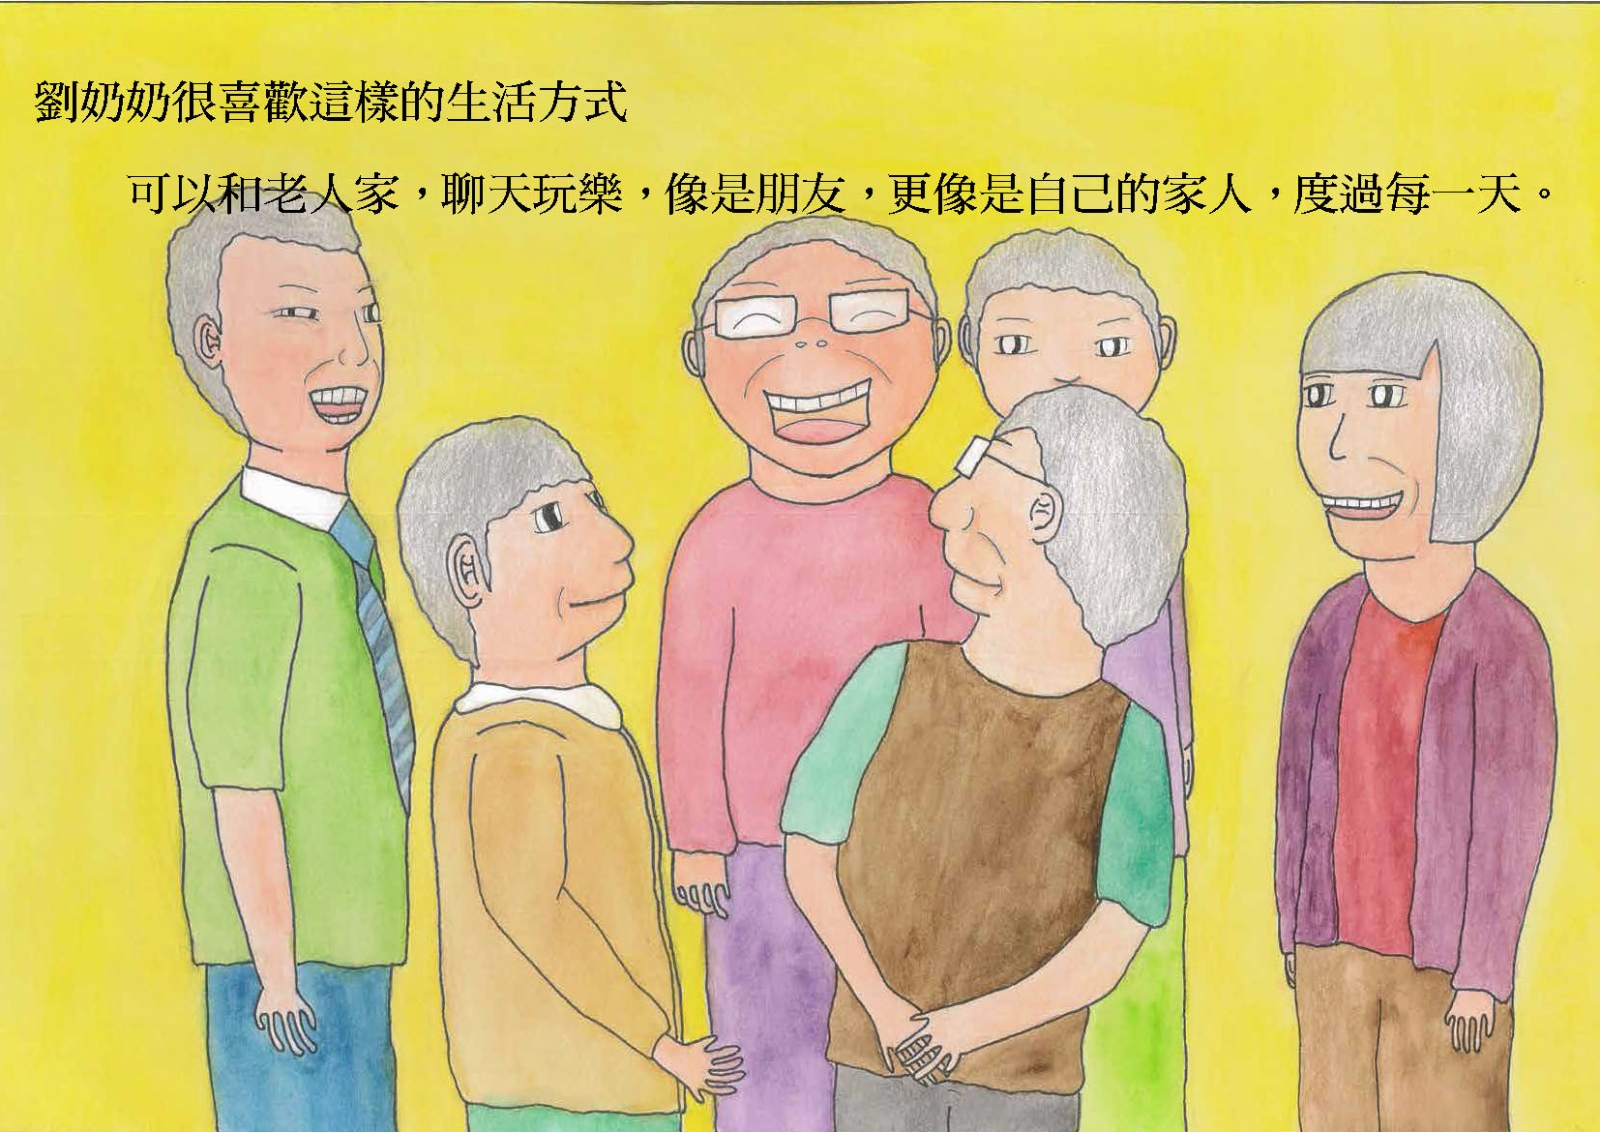 劉奶奶很喜歡這樣的生活方式，可以和老人家，聊天玩樂，像是朋友，更像是自己的家人，度過一天。